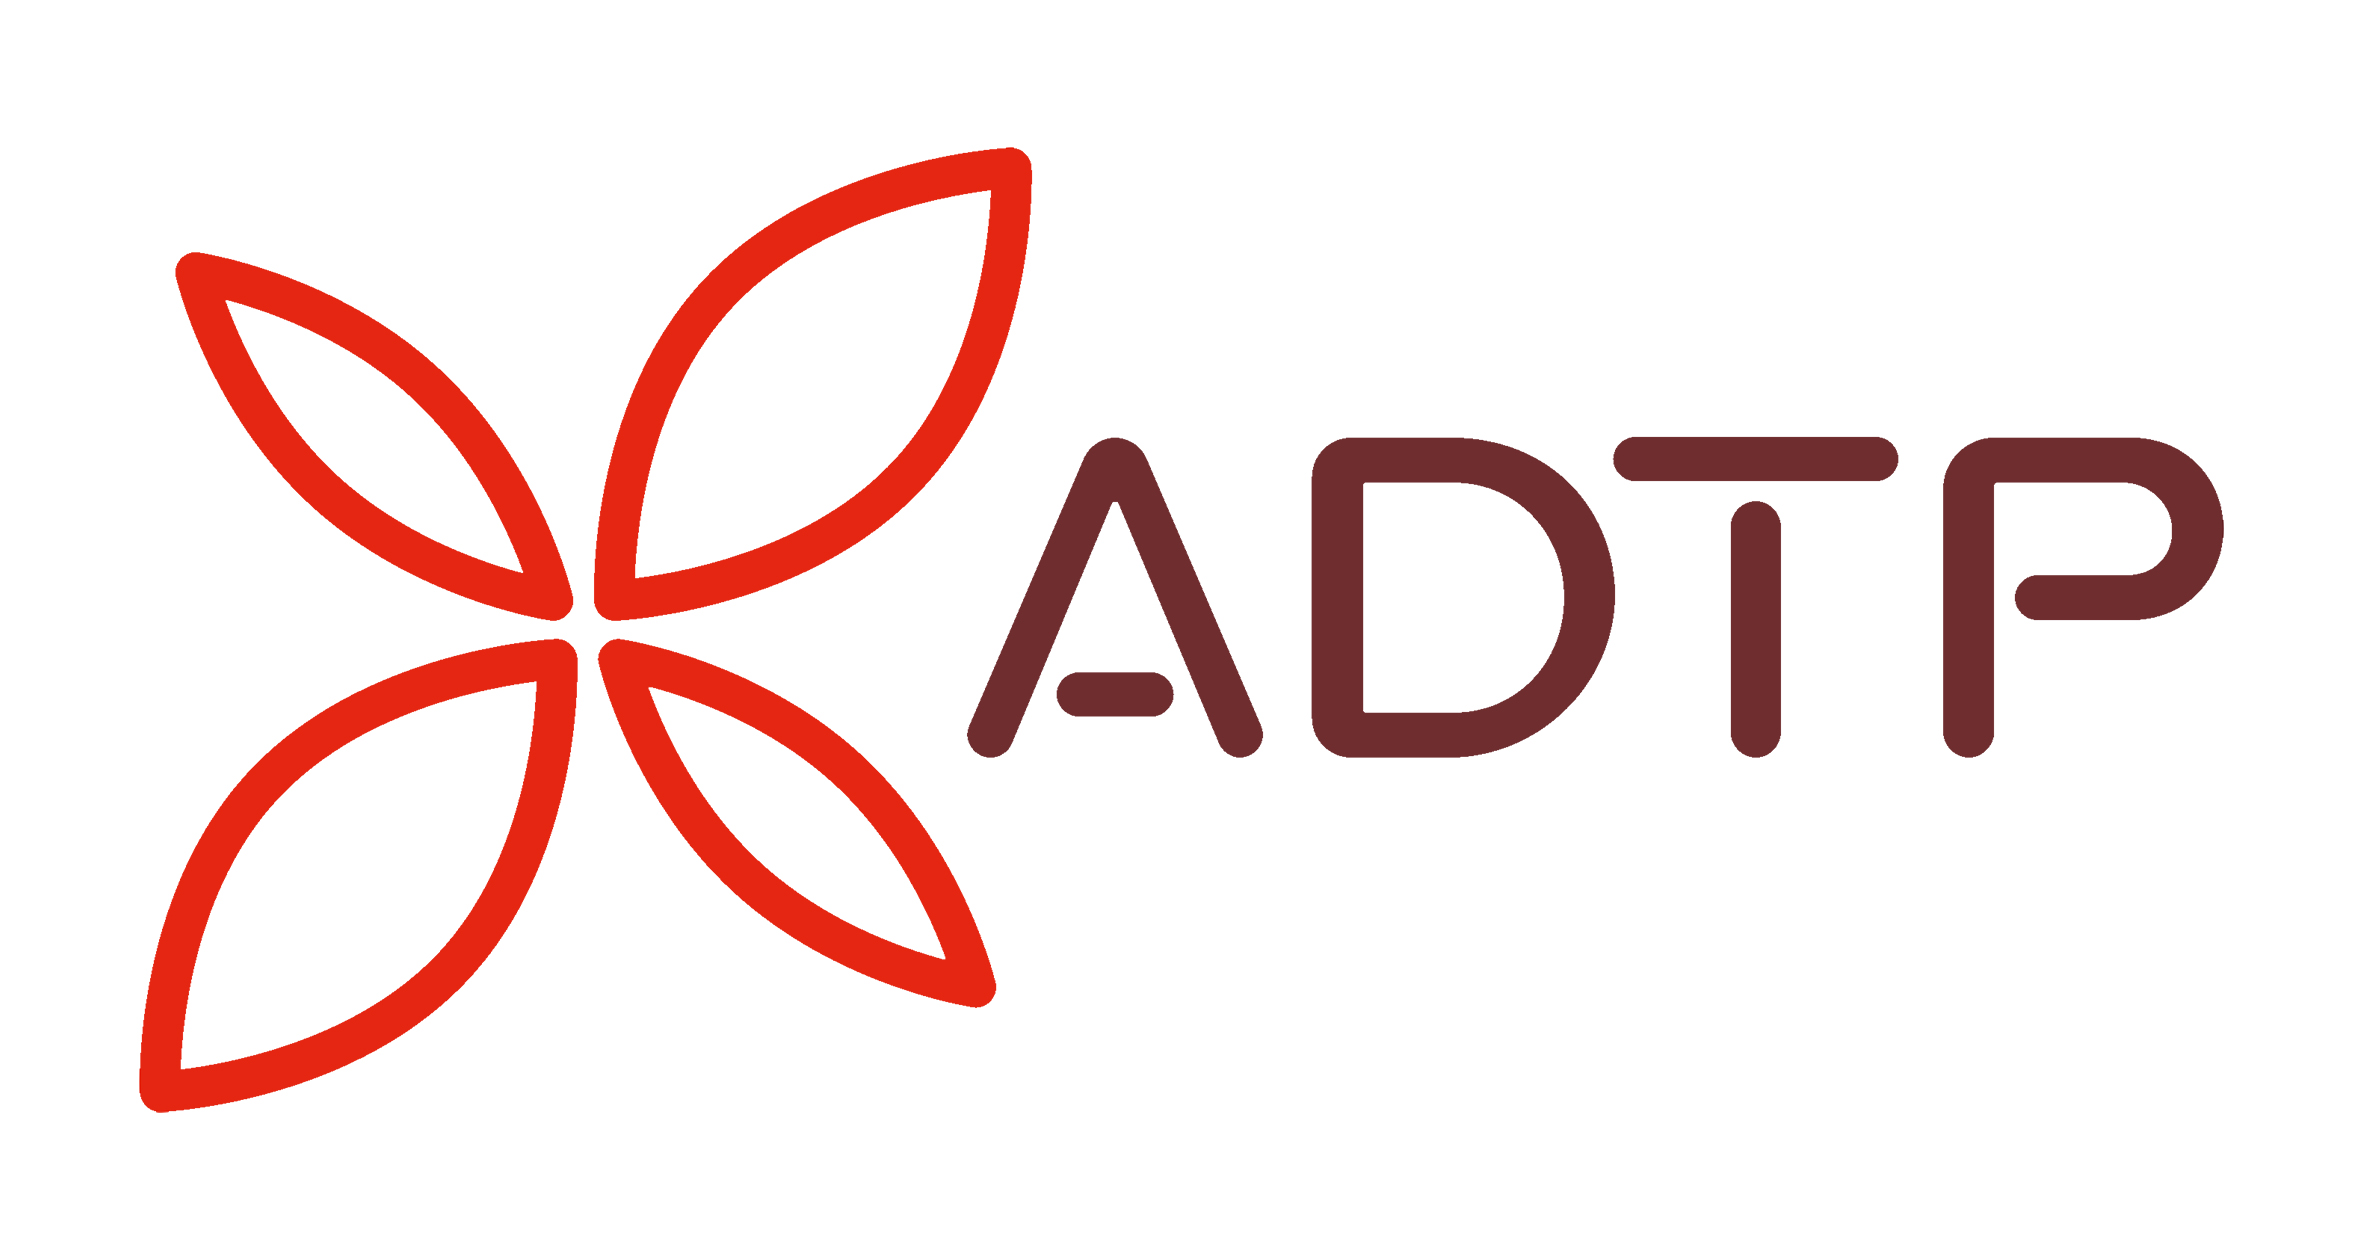 Logo ADTP